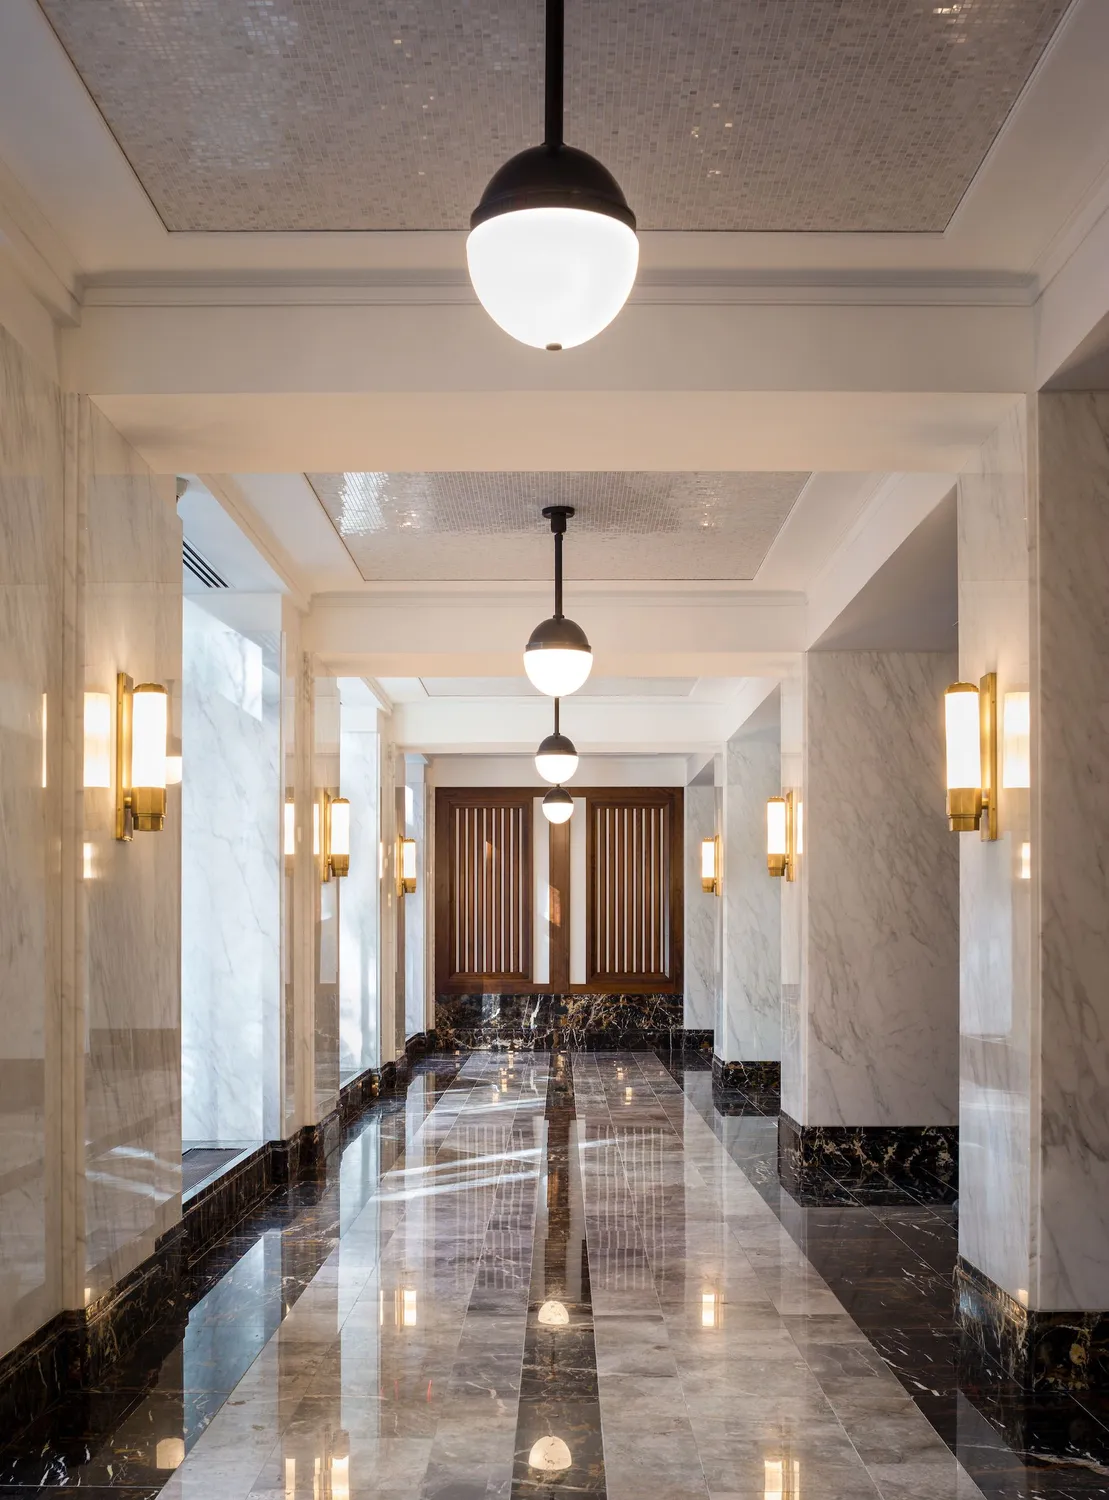 Lobby with marble floors